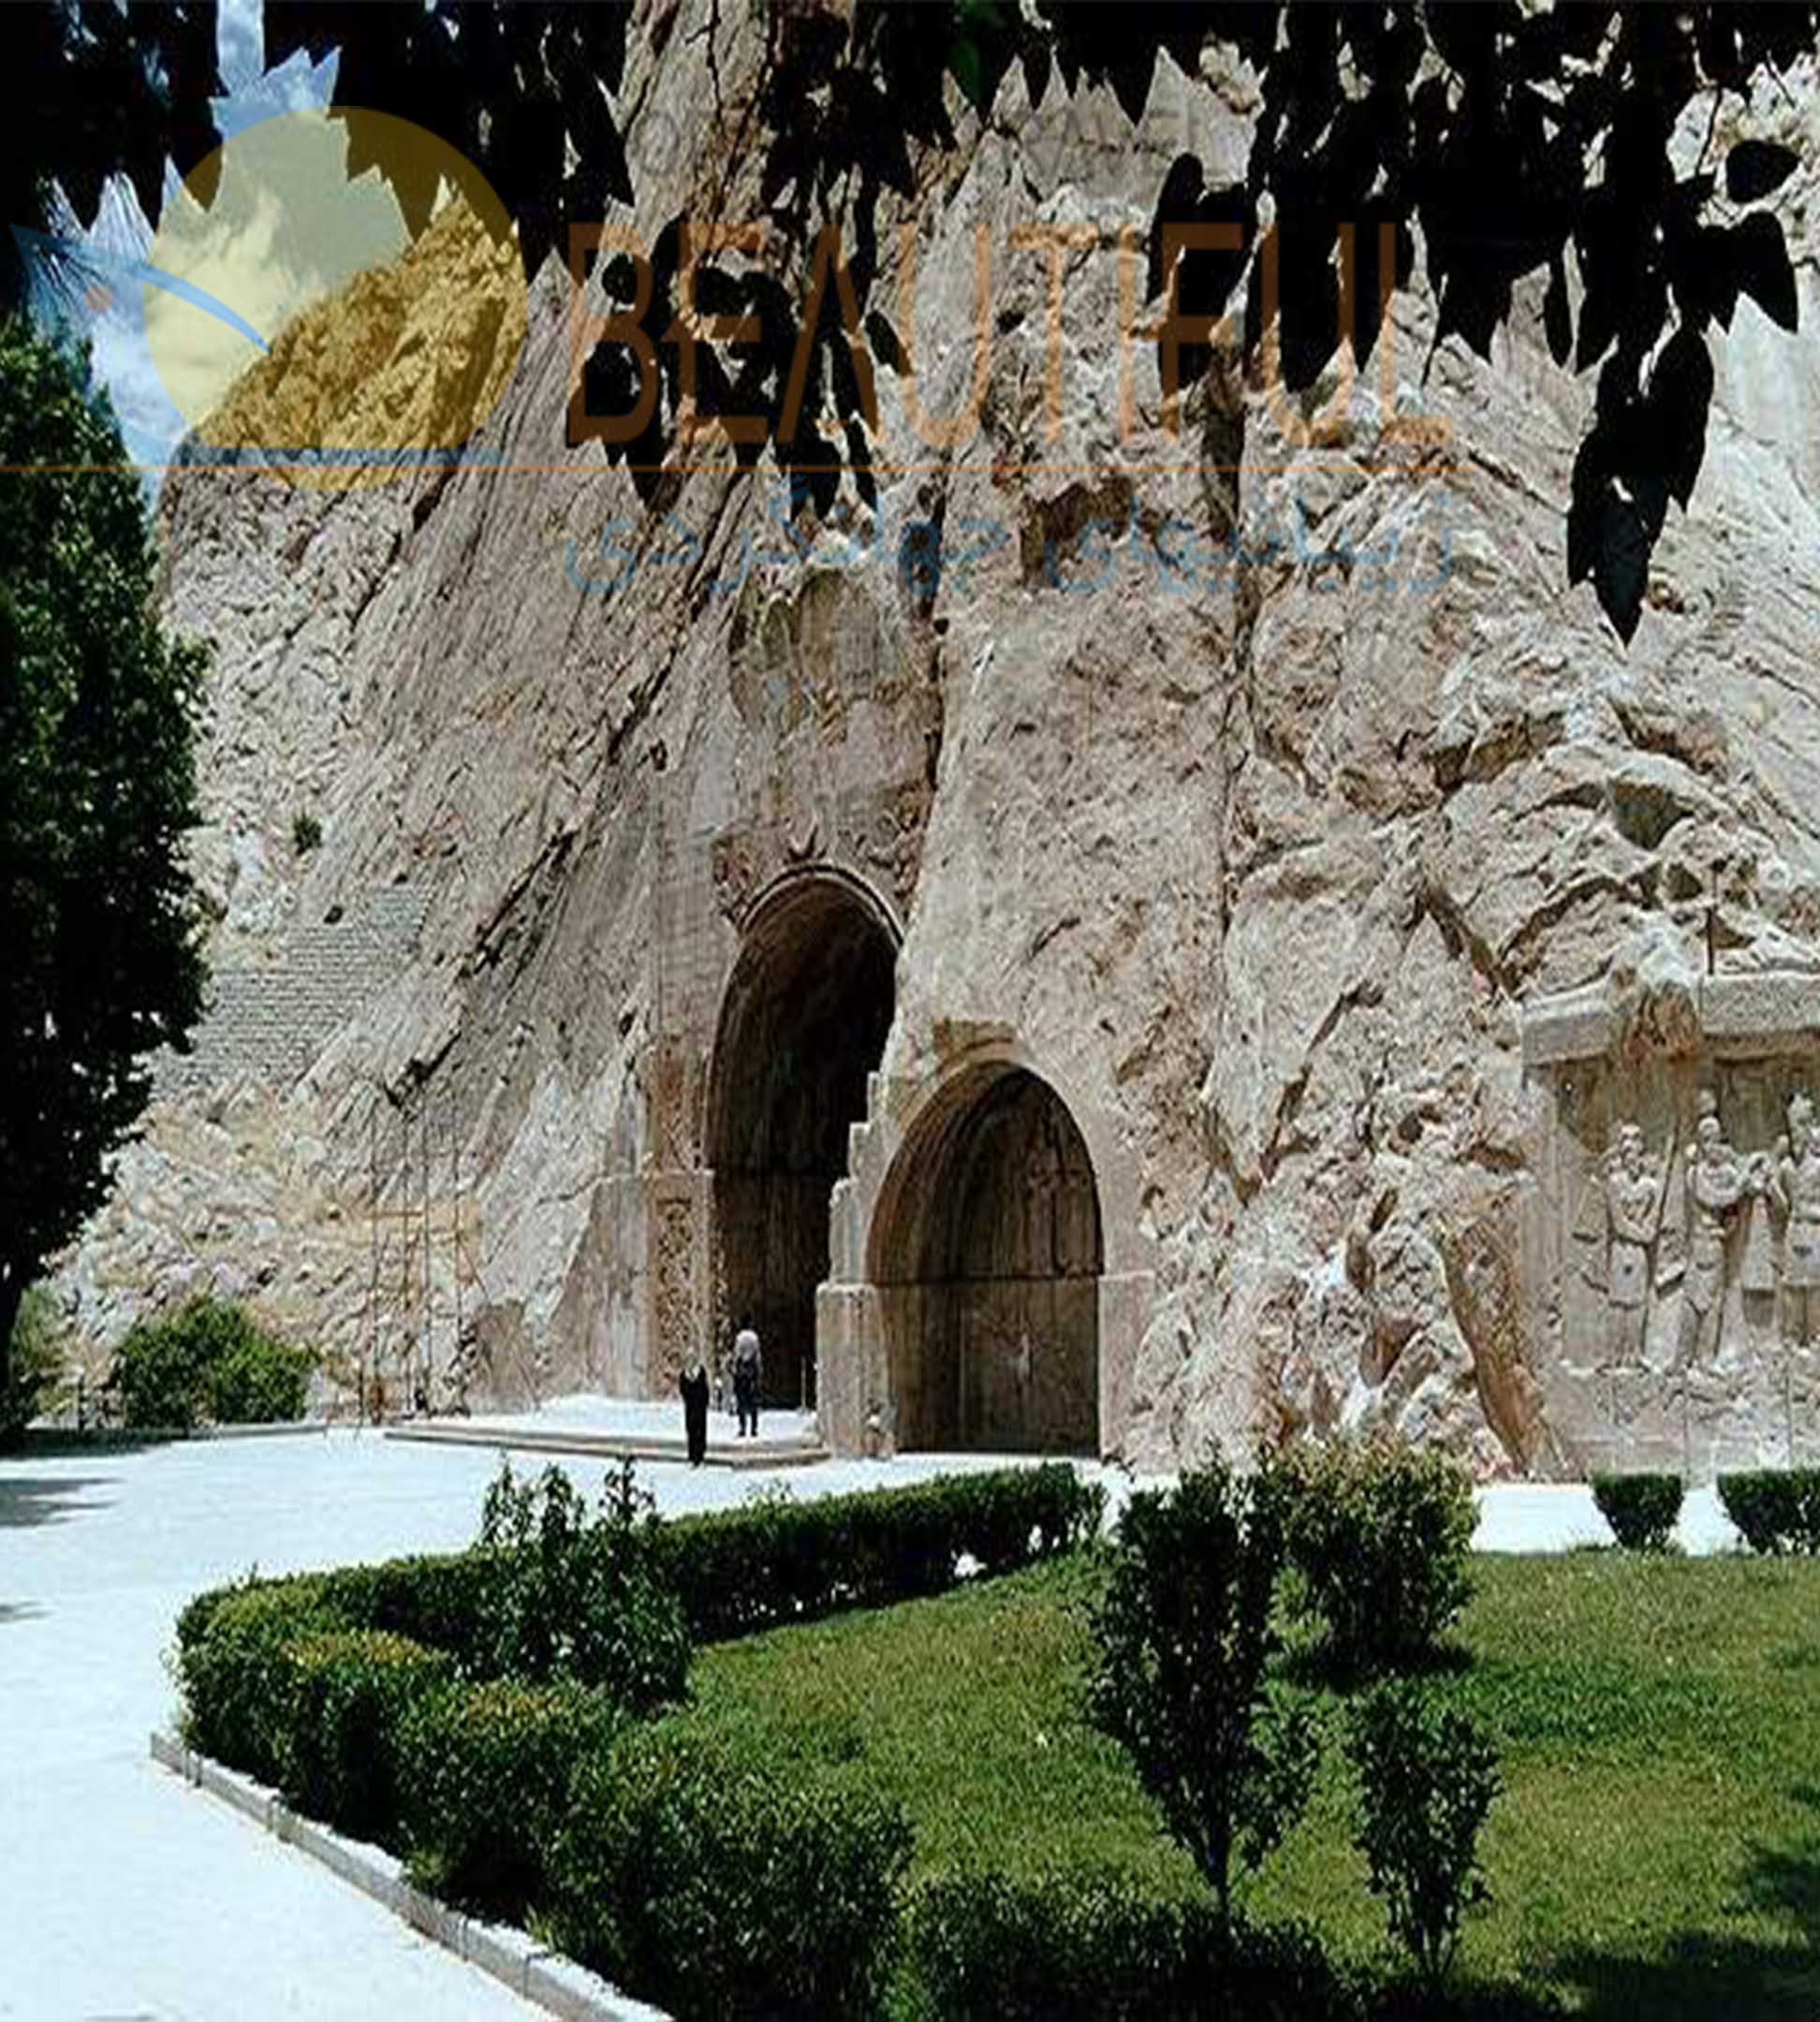 Kermanshah